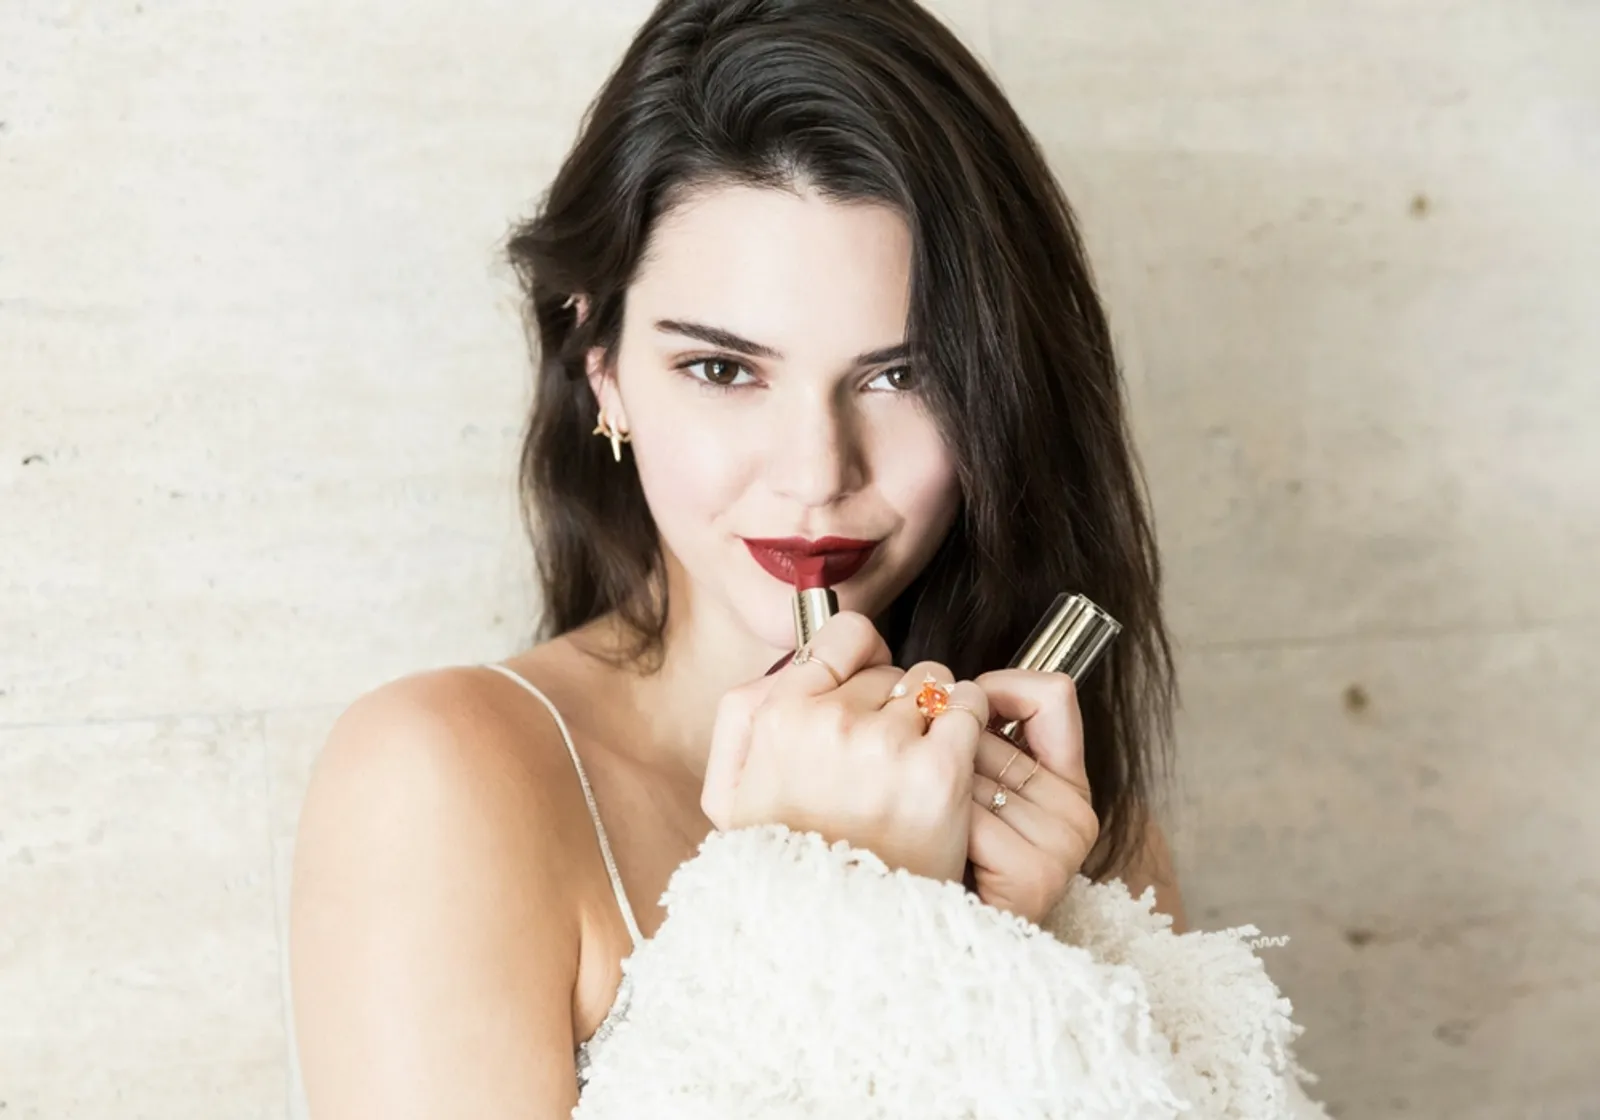 Ingin Cantik a la Kendall Jenner? Coba Rangkaian Lipstik Terbaru Ini